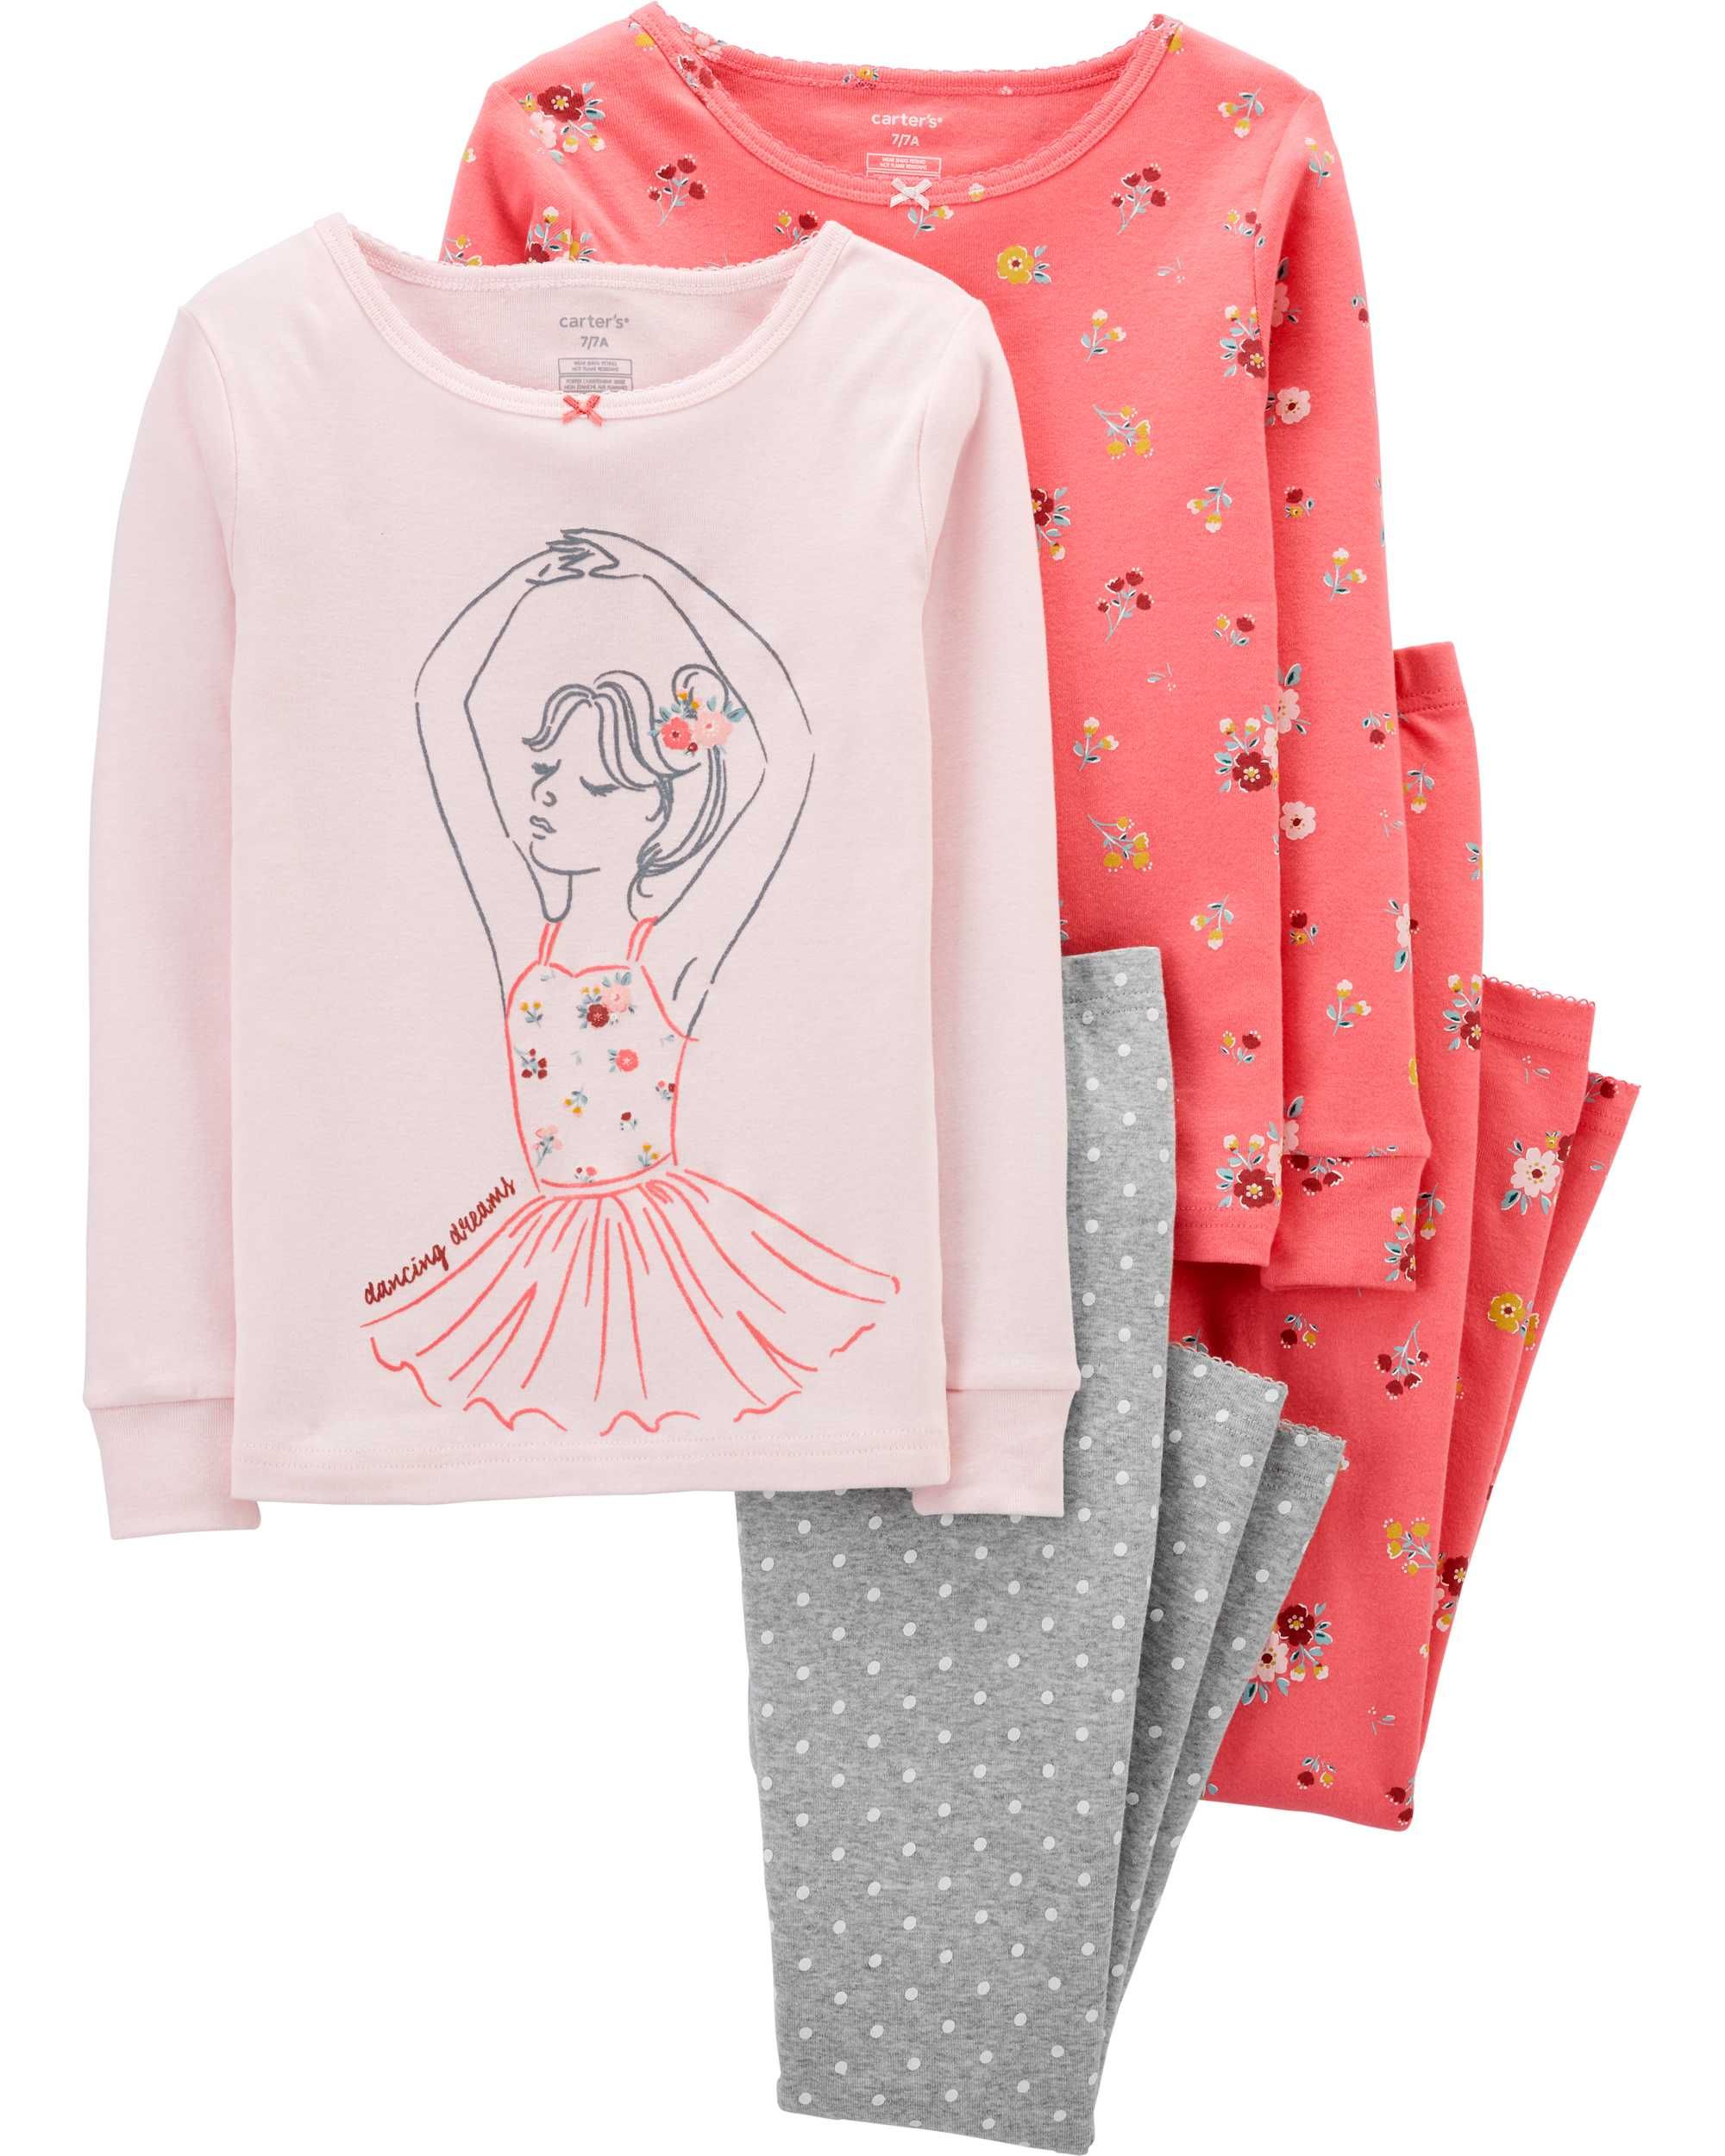 Пижамы для девочки Carters Балерина картерс в наборе, размер 6 лет